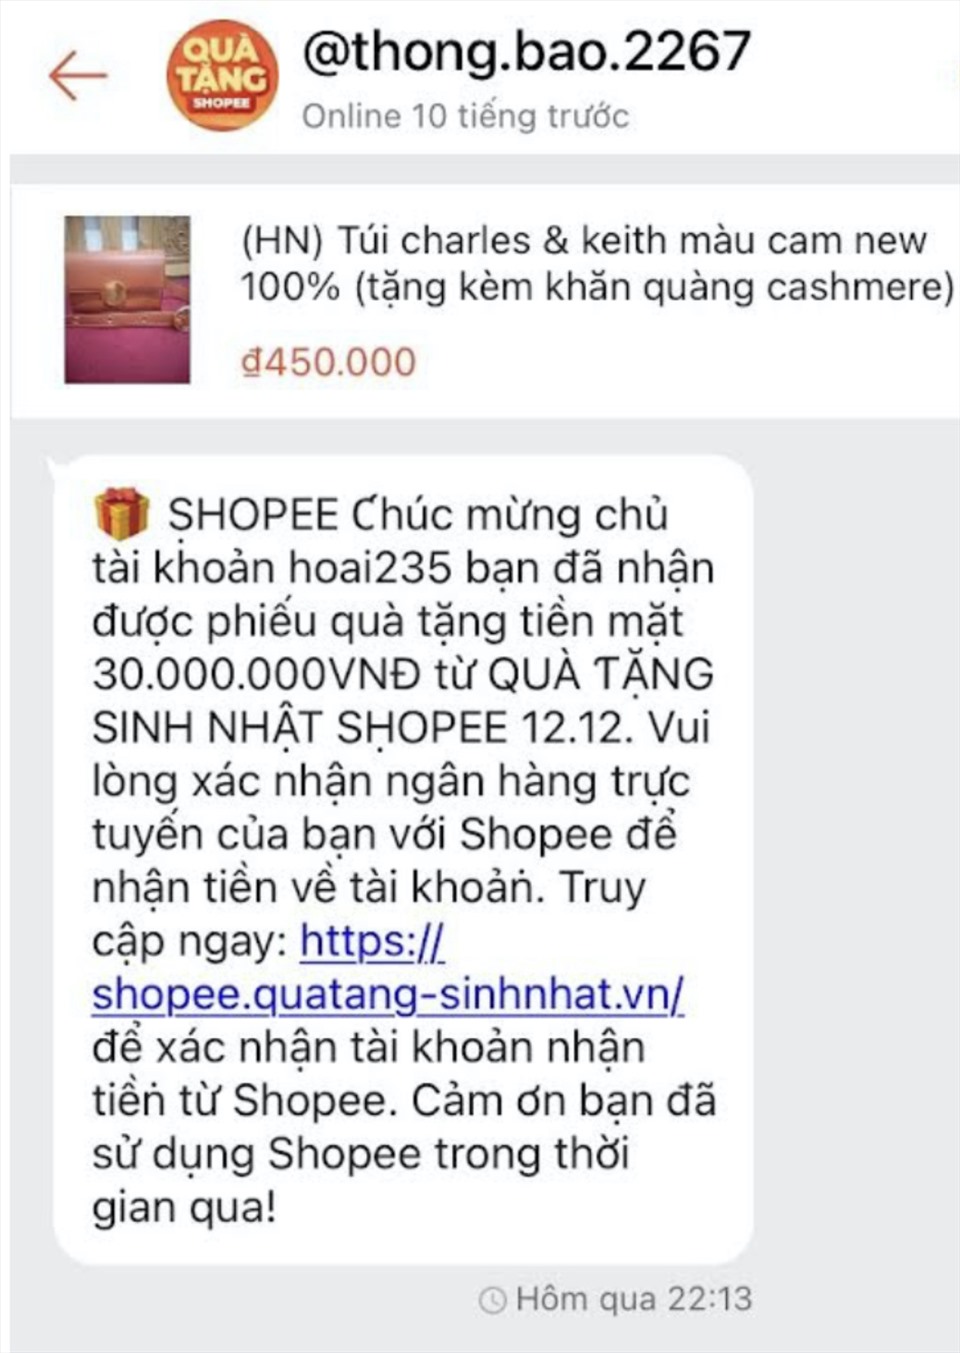 Lừa đảo Shopee: Bạn đã từng gặp phải các vấn đề về Lừa đảo Shopee khi mua hàng trực tuyến? Hãy xem những hình ảnh này để biết thêm thông tin và cách phòng tránh những hoạt động lừa đảo khi mua sắm trên Shopee.